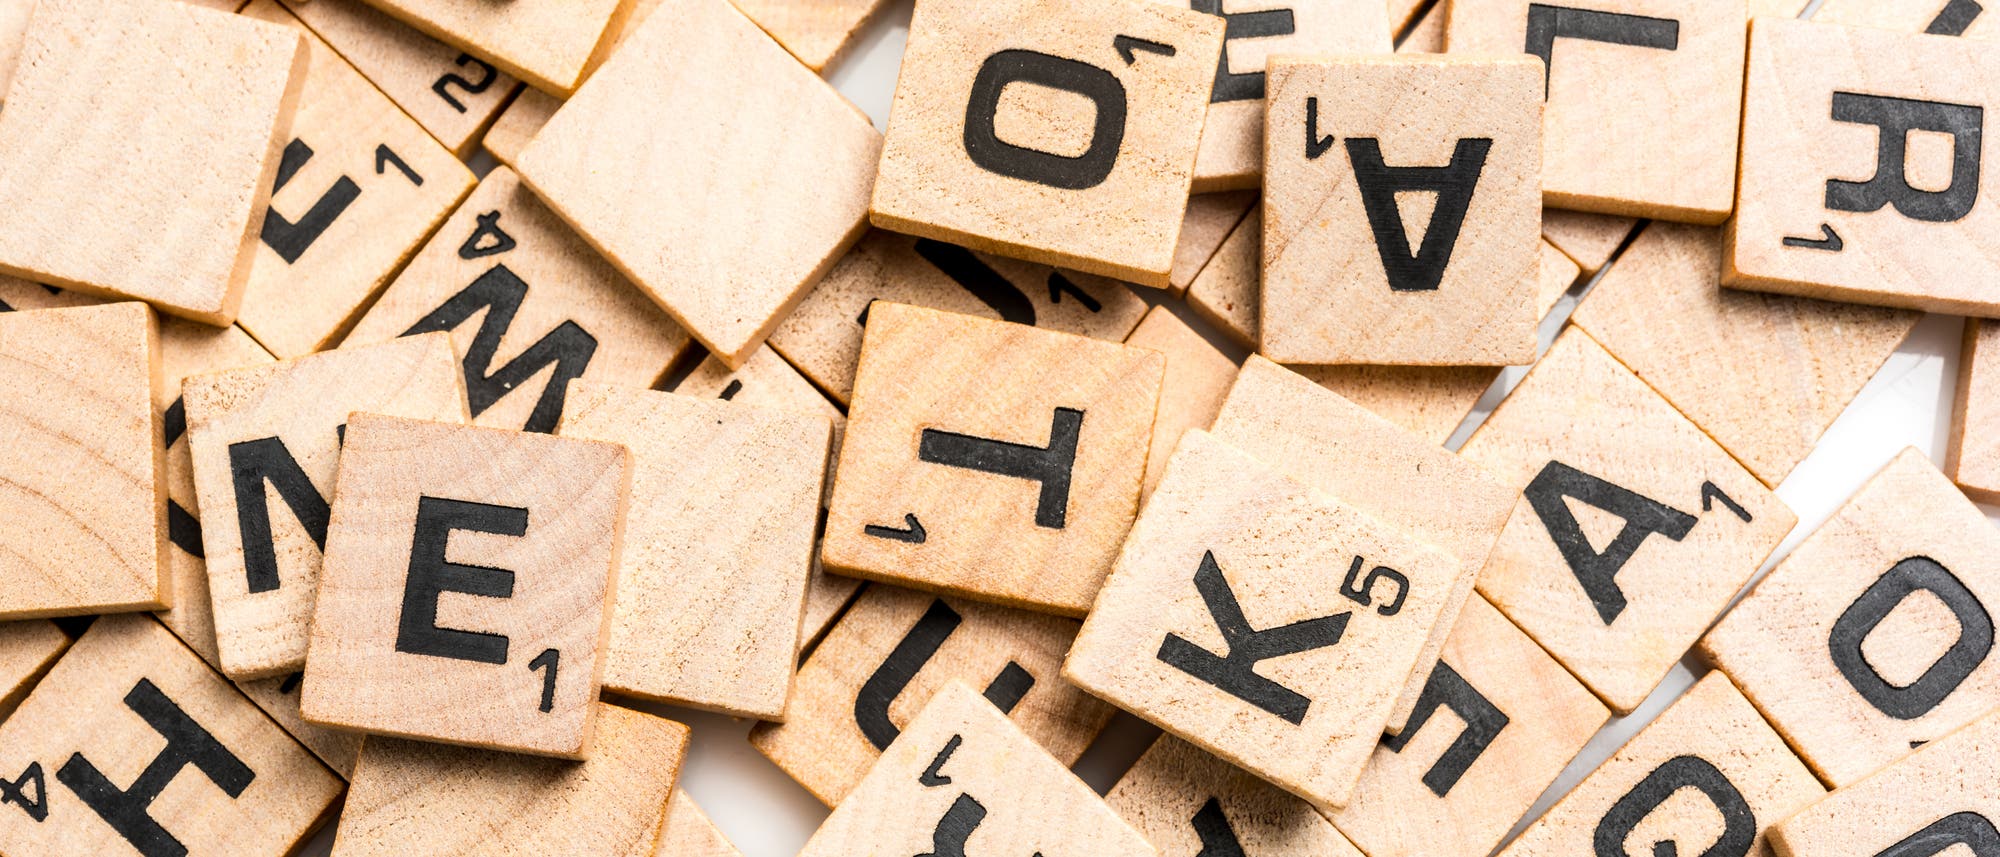 Eine Menge von Scrabble-Steinen mit Buchstaben